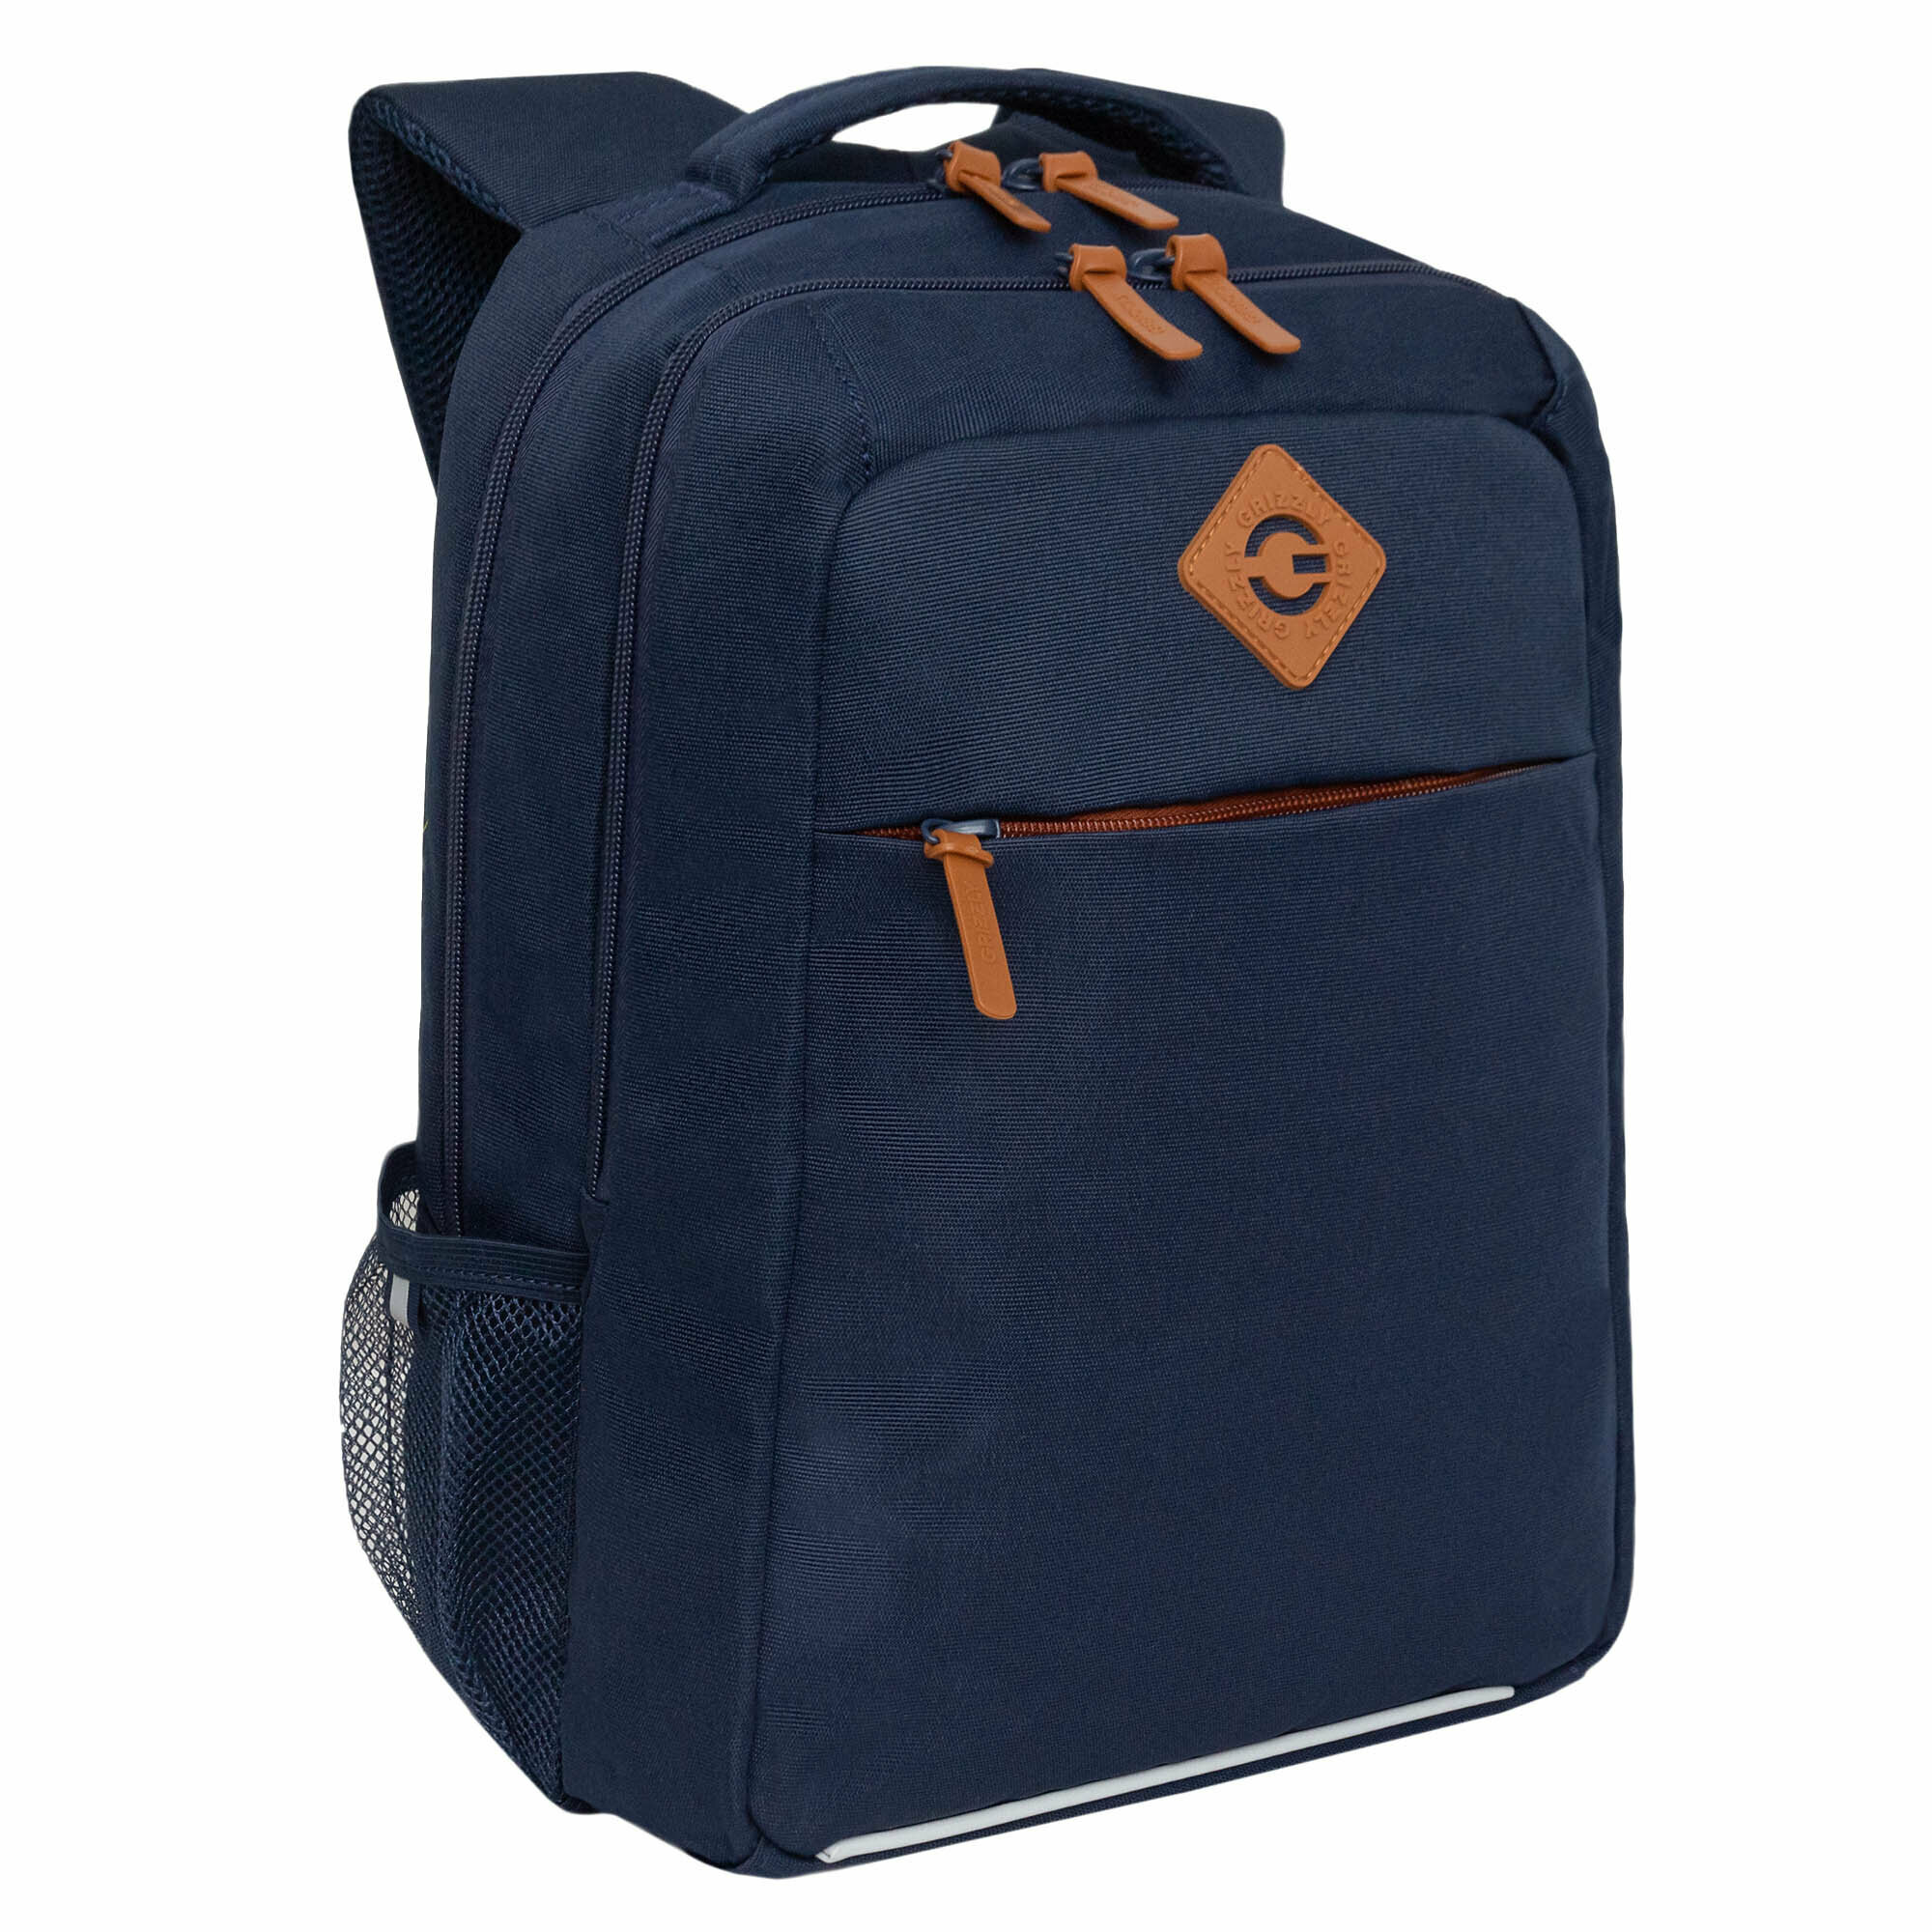 Рюкзак молодежный GRIZZLY с карманом для ноутбука 13", анатомической спинкой, для мальчика RB-456-1/3